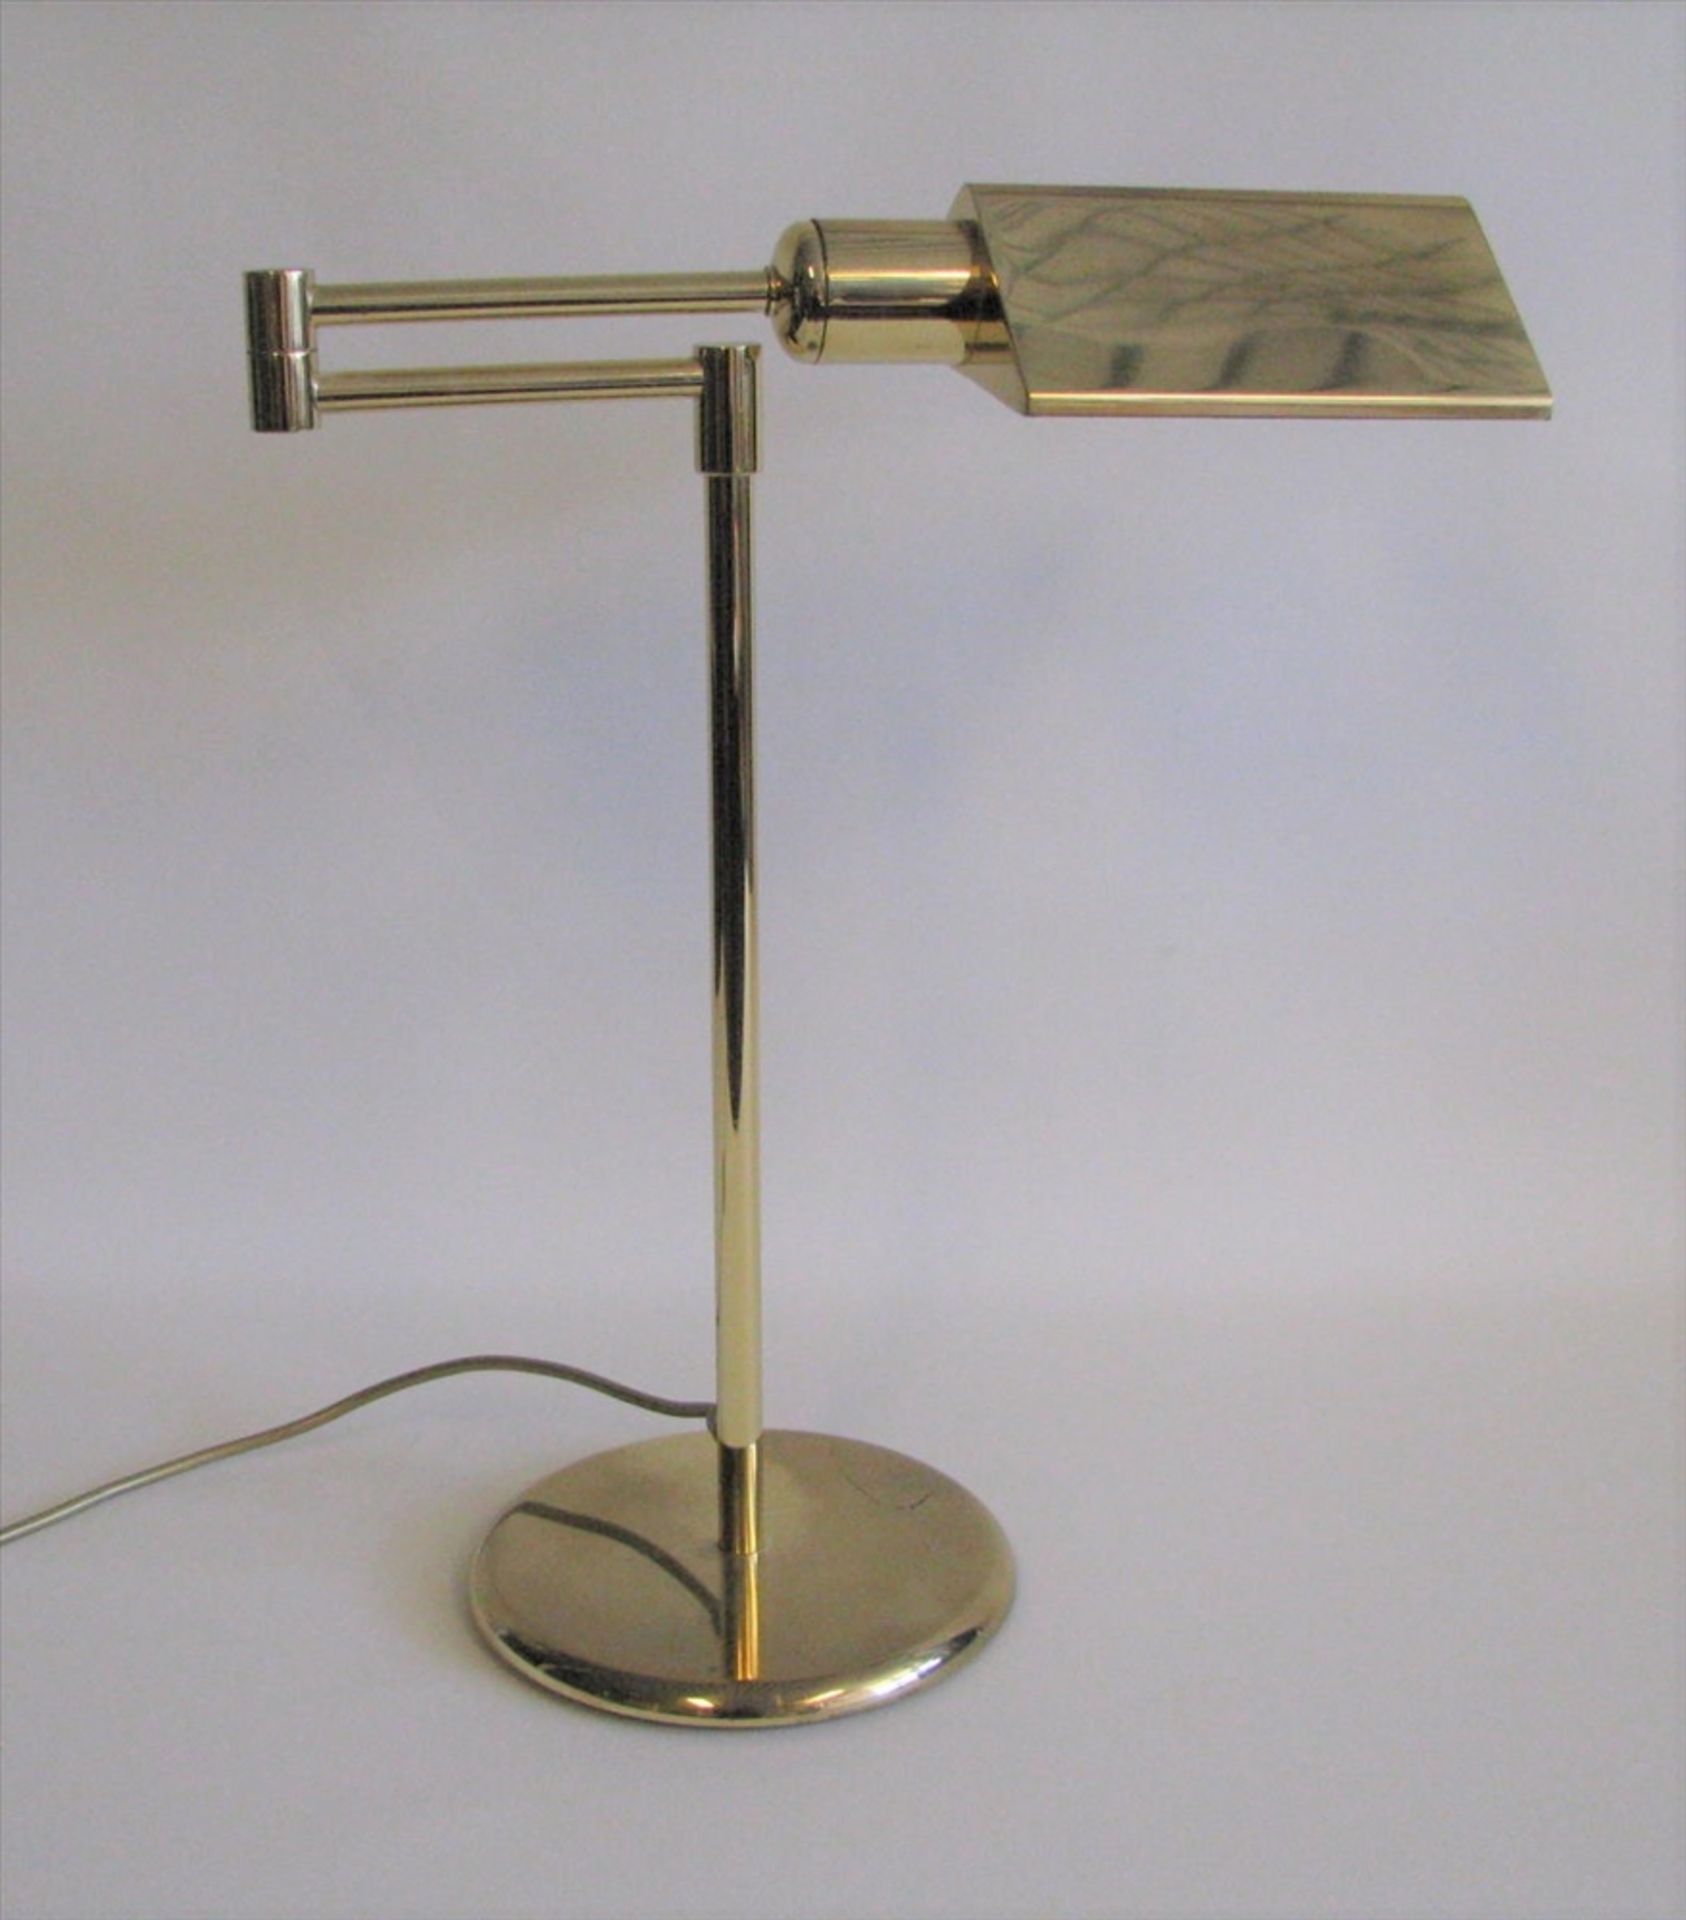 Tischlampe, Italien, Ego Luce, 1960/70er Jahre, Messing, schwenkbar, h 48 cm, d 41 cm.- - -19.00 %